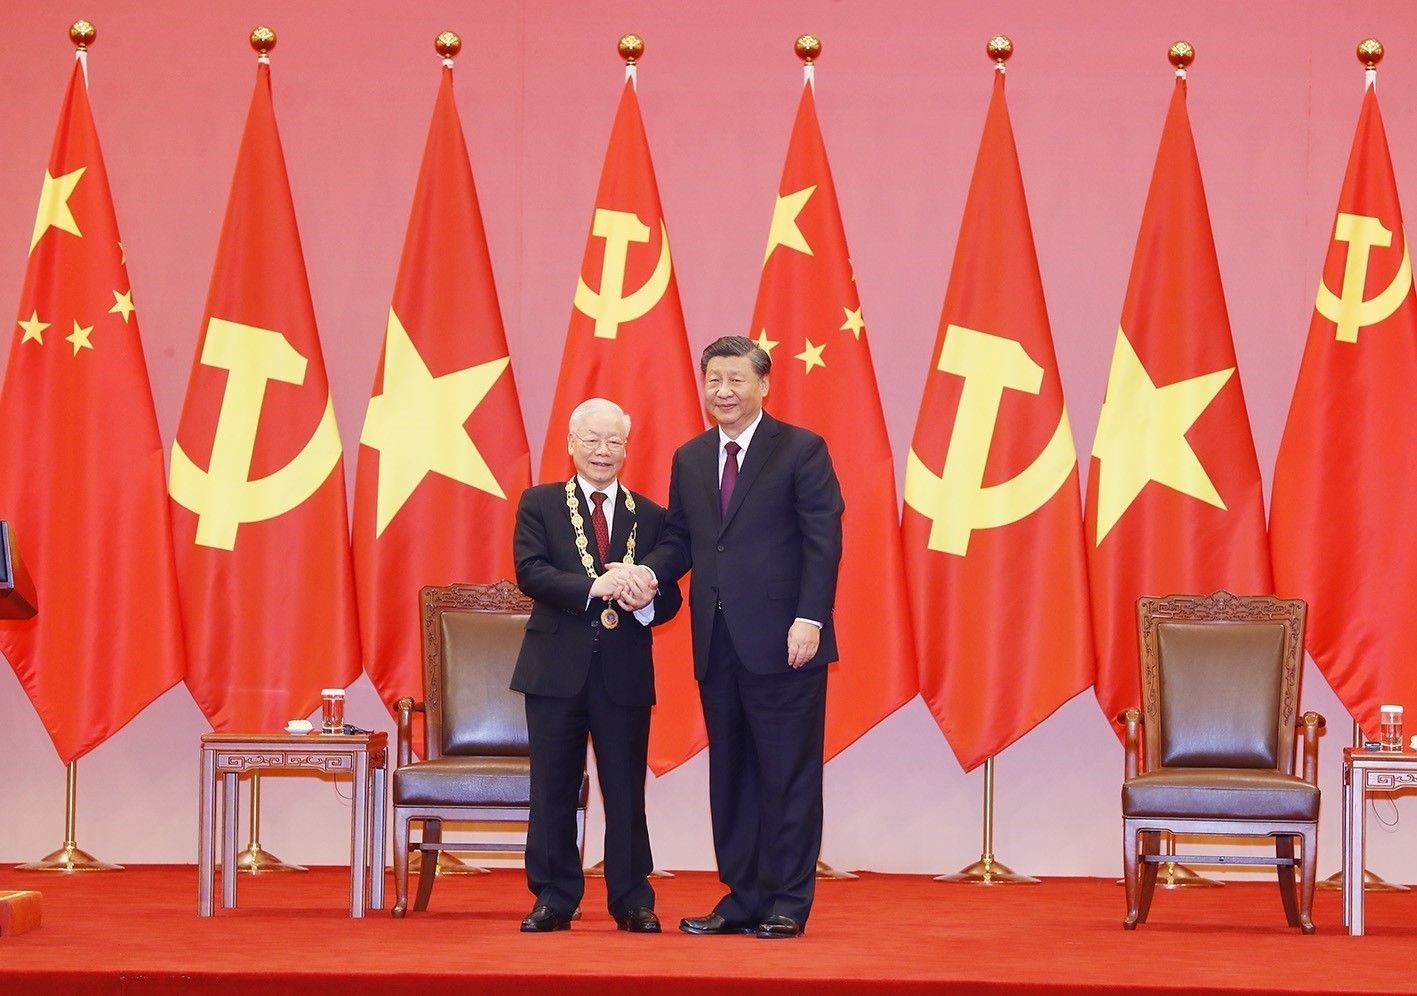 Chủ tịch Tập Cận Bình trao Huân chương Hữu nghị tặng Tổng Bí thư Nguyễn Phú Trọng